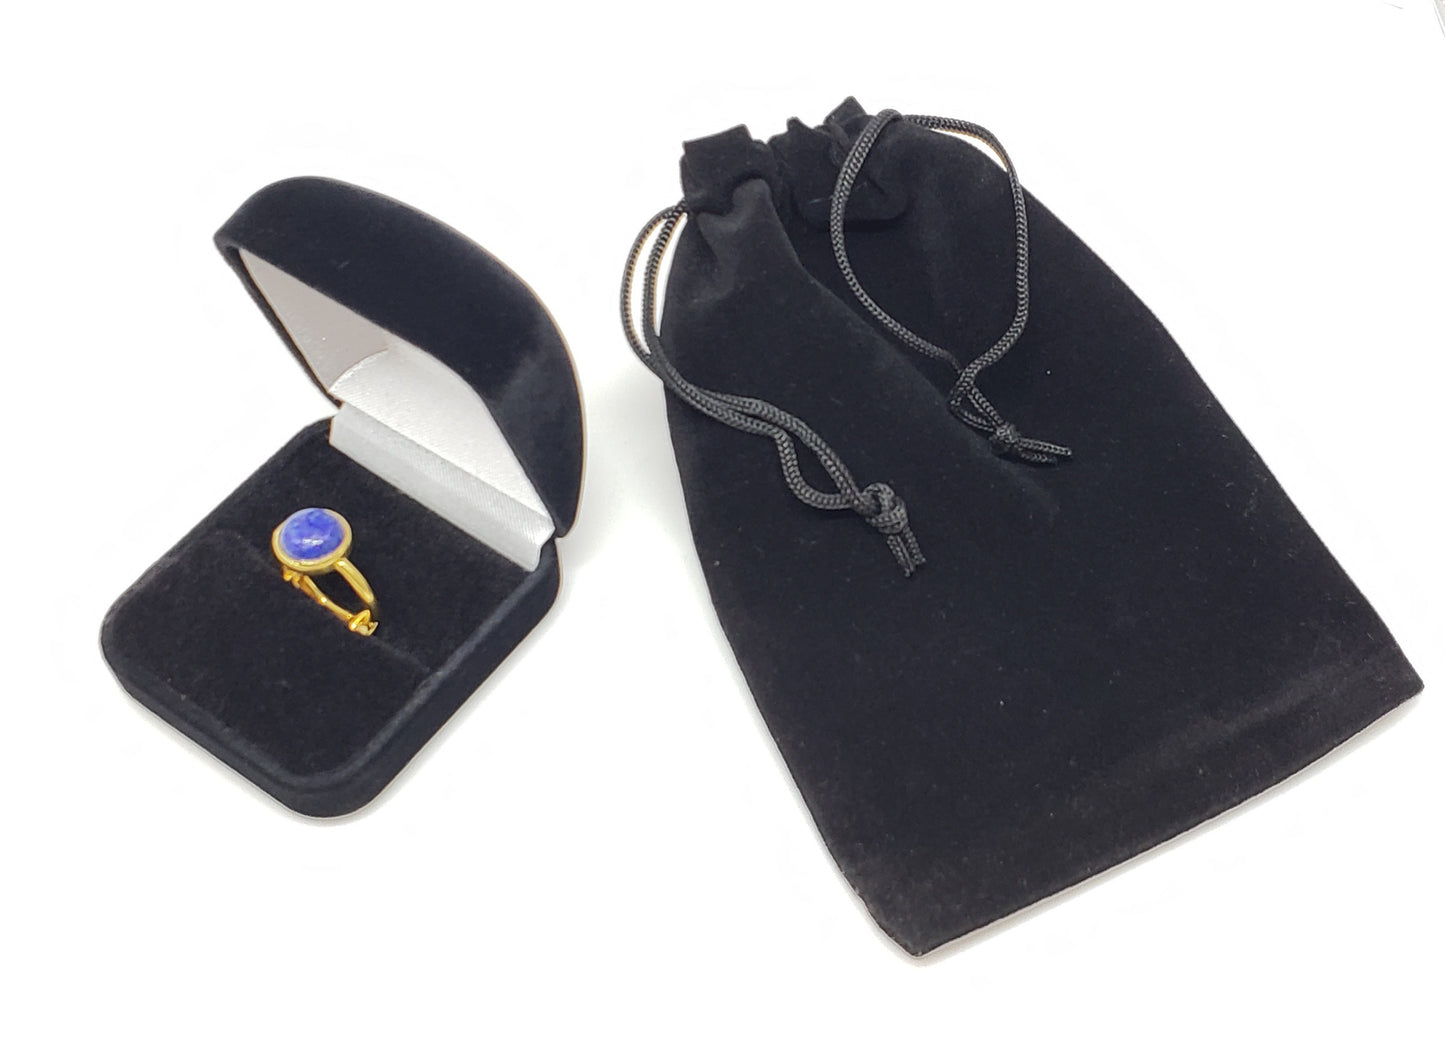 Blue Lapis Lazuli Ring - 24k Gold Plated - Adjustable Size  - Joy#174